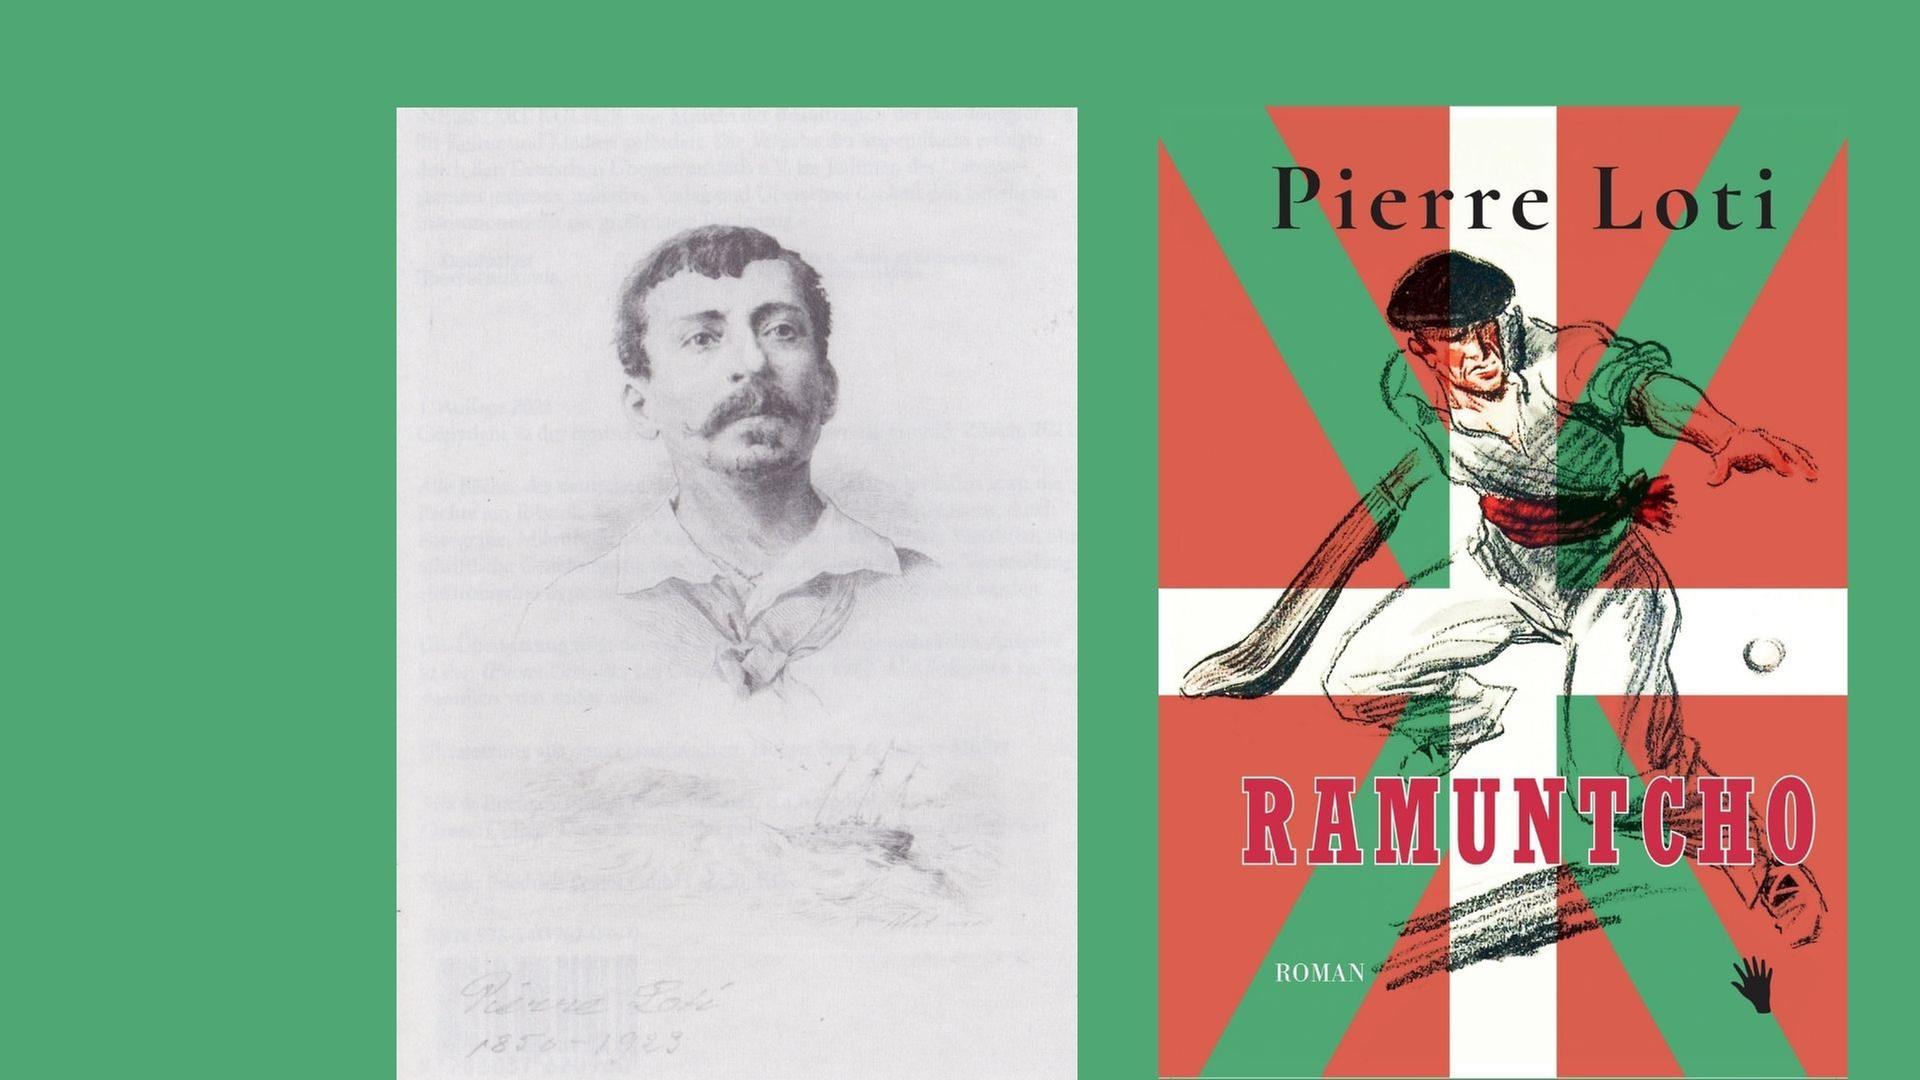 Portrait Zeichnung des Schriftstellers und Buchcover zu "Ramuntcho"